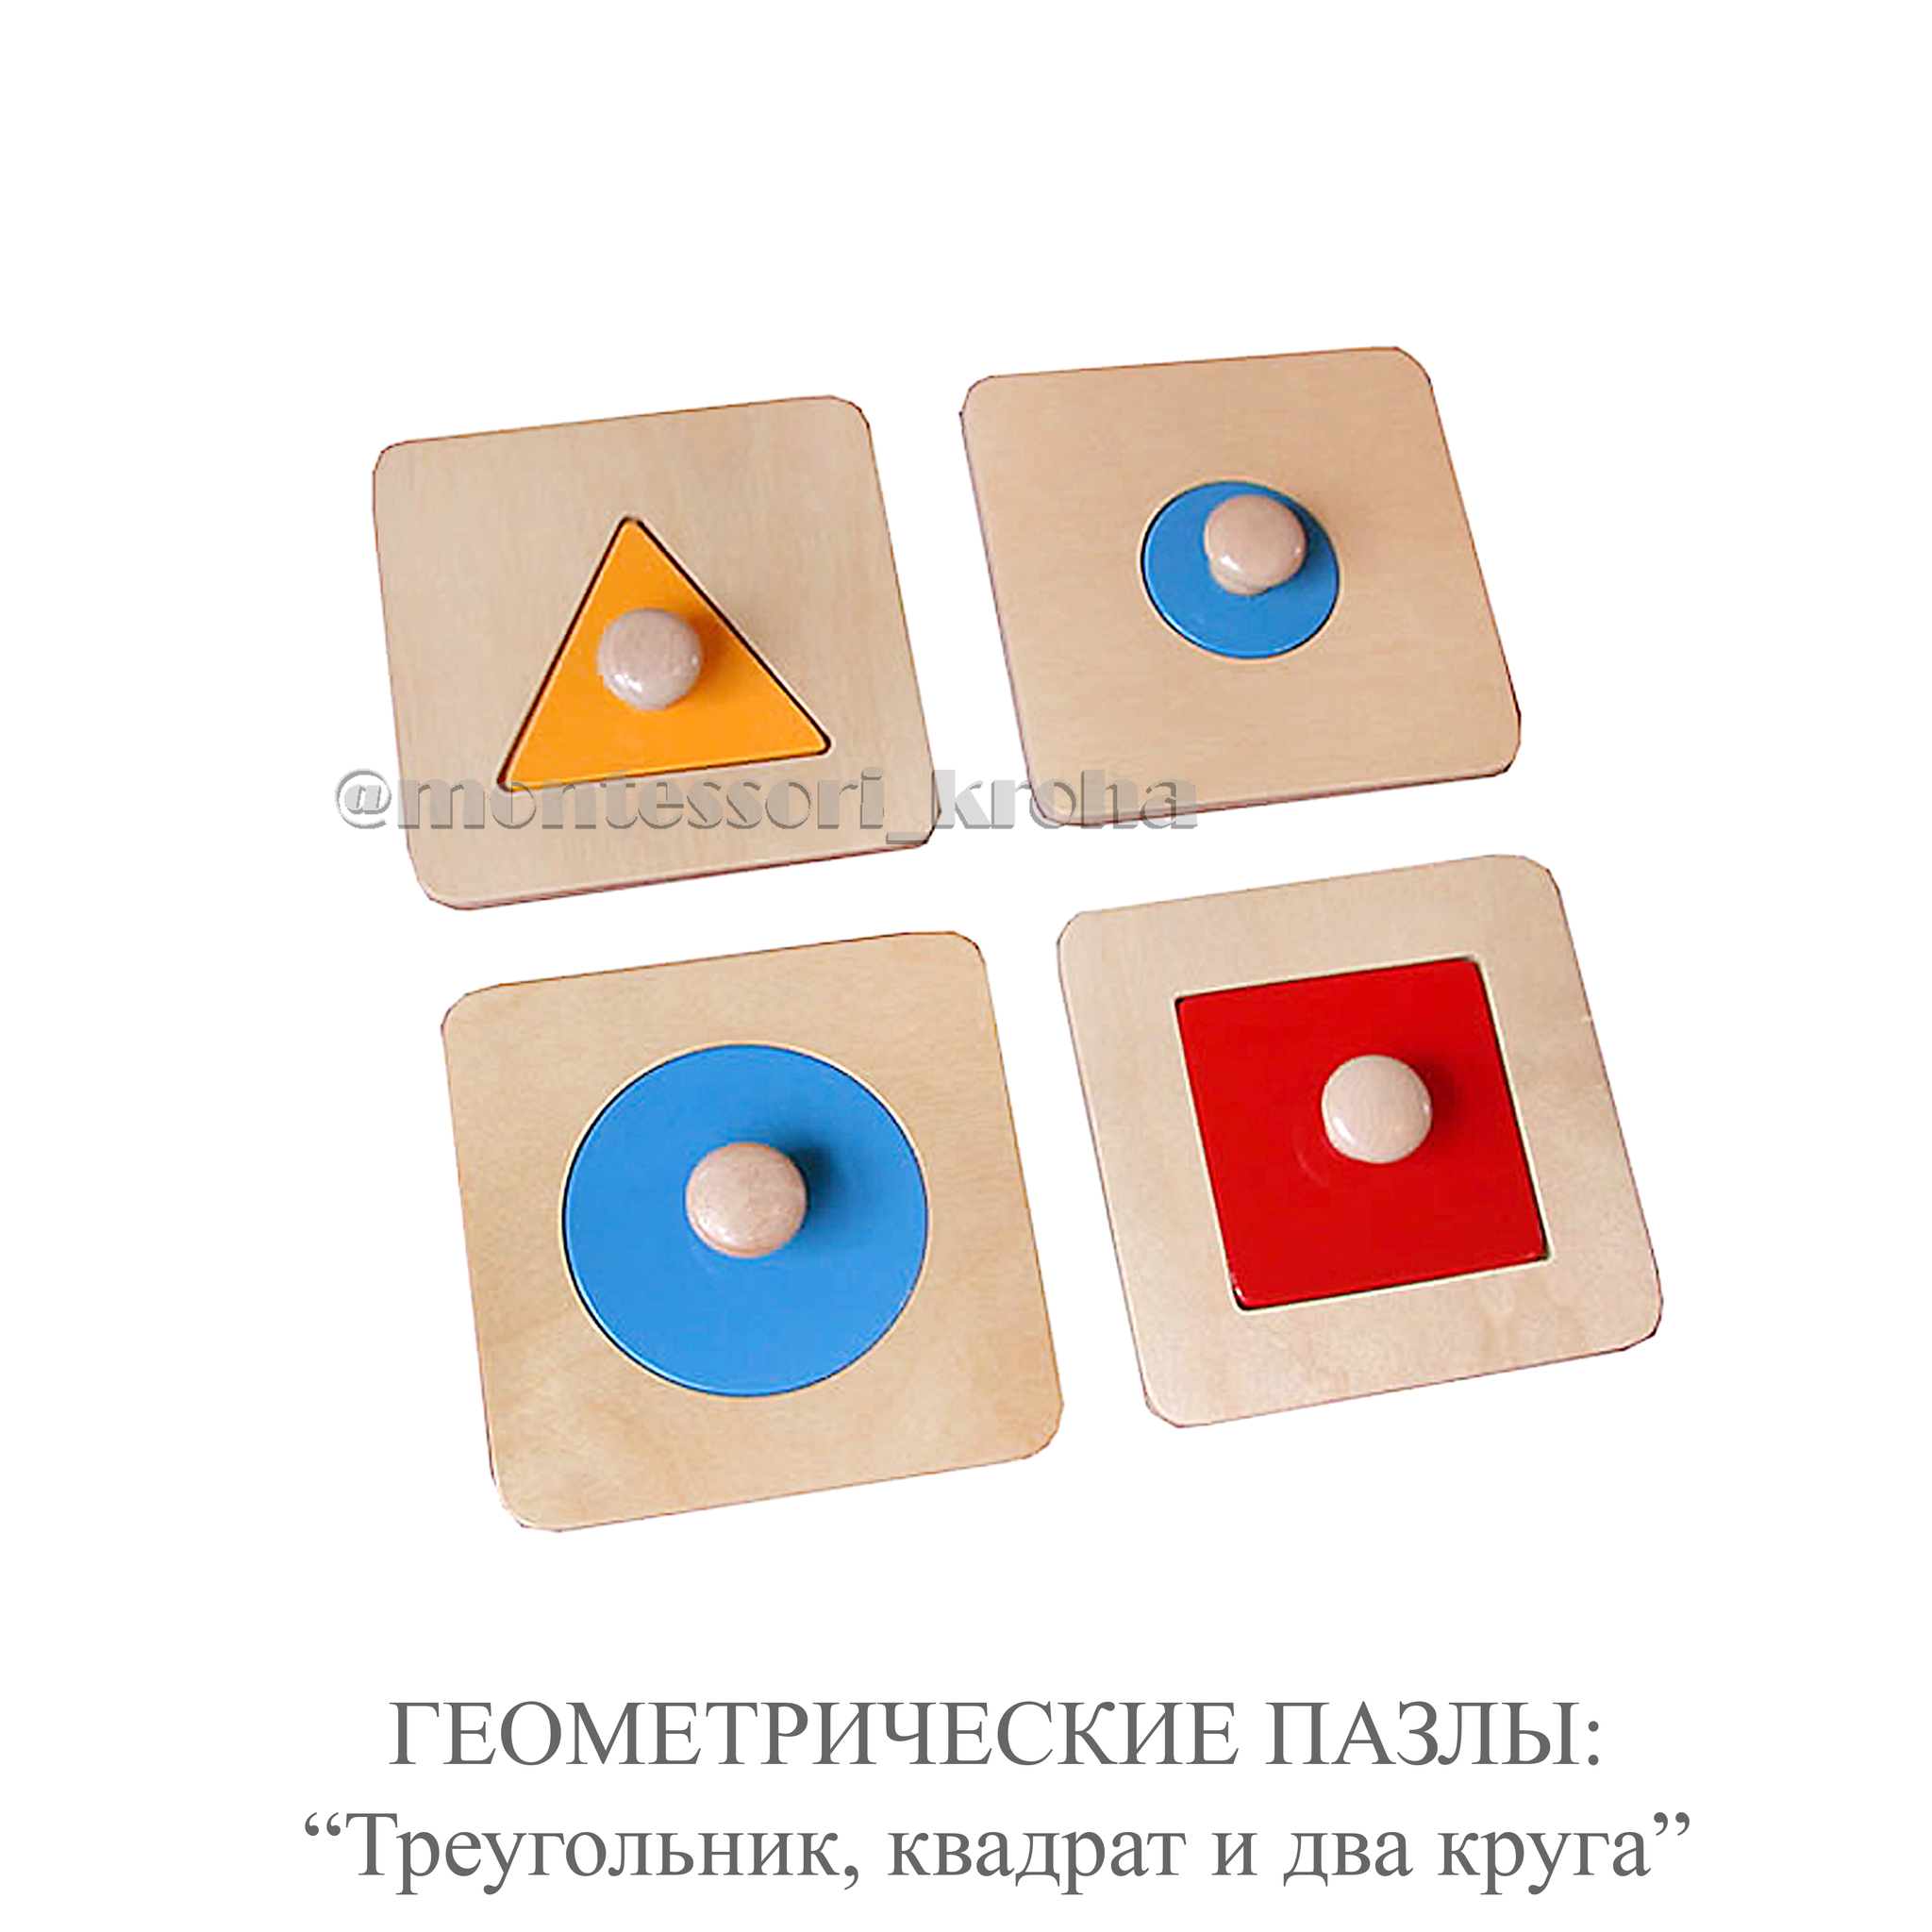 Геометрические пазлы: квадрат, круг, треугольник на подставке